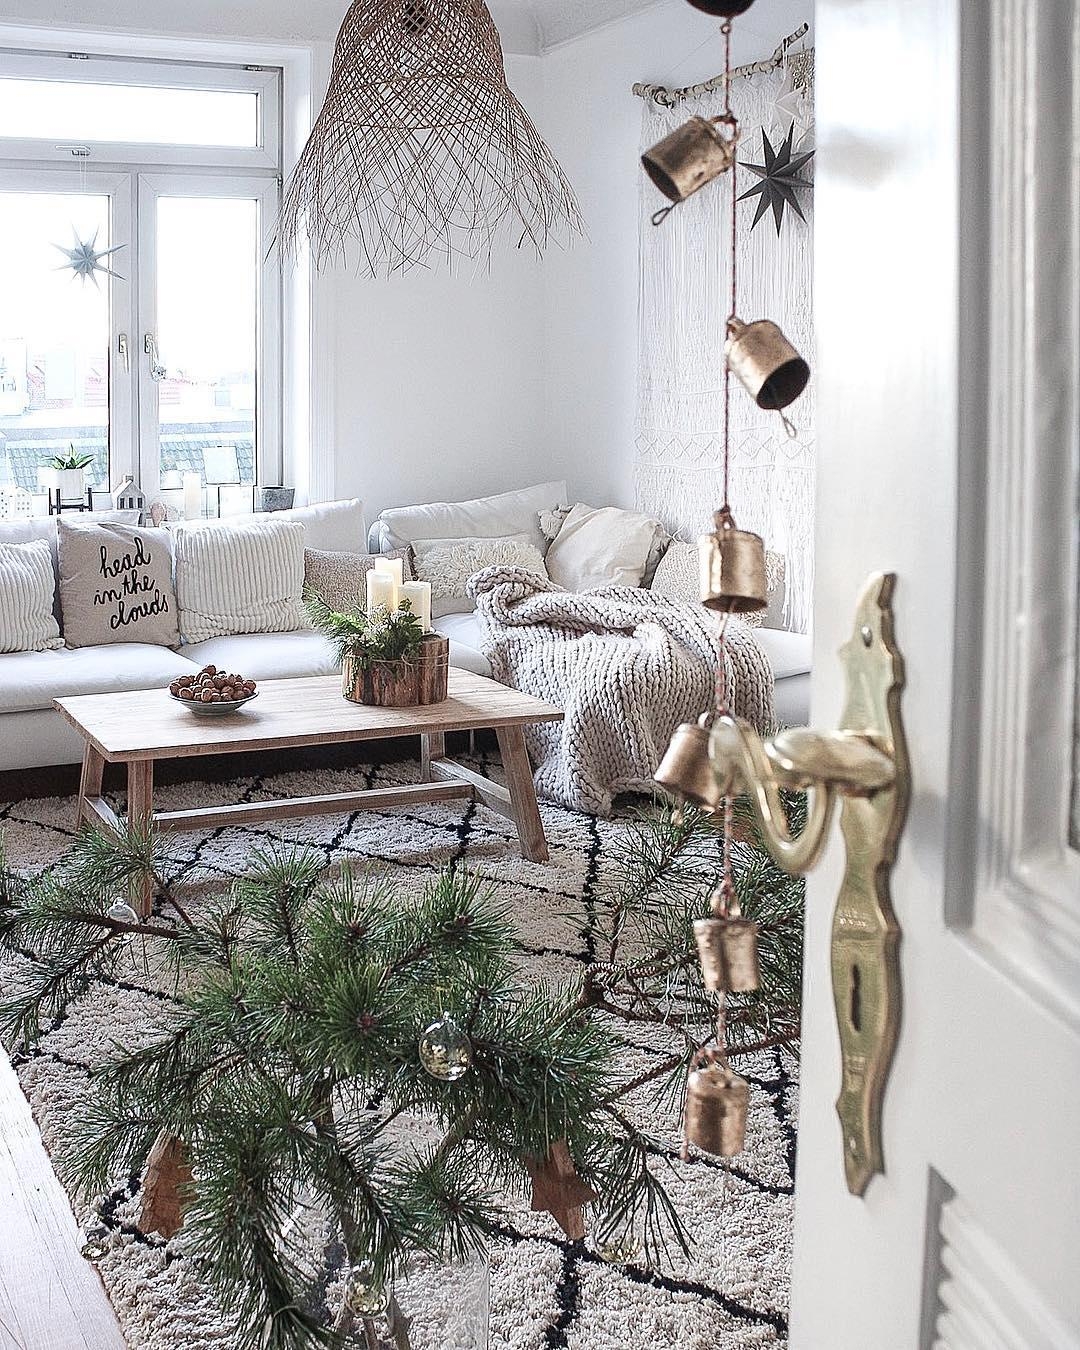 Ein Einblick in unser #Wohnzimmer
#cozy #weihnachtsdeko #gemütlich #altbau #scandi #boho